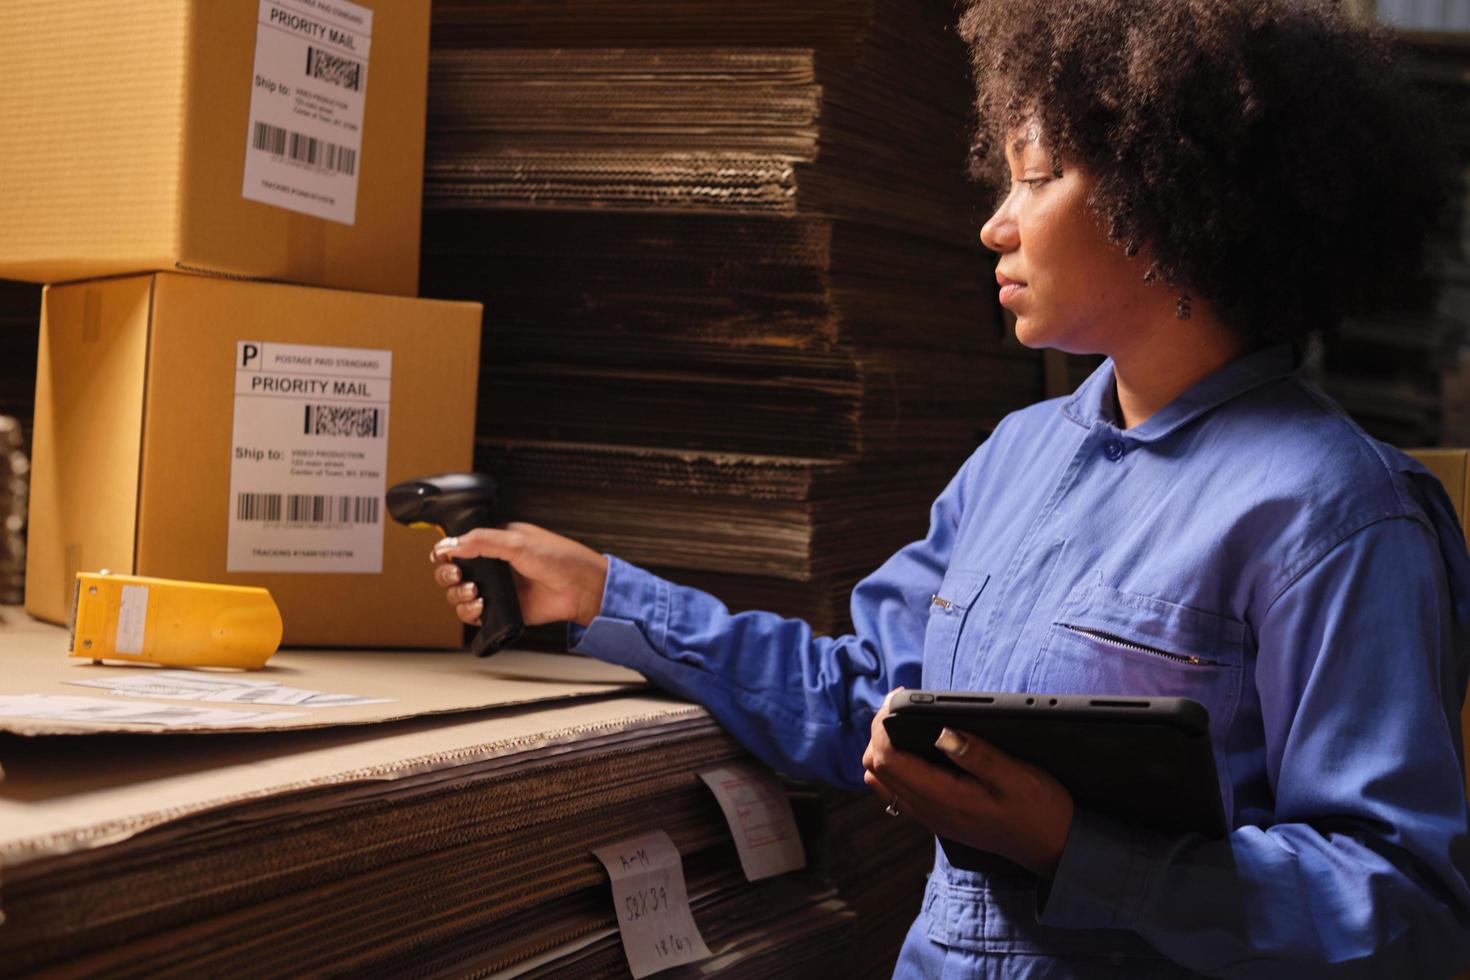 una trabajadora escanea códigos de barras para comprobar los pedidos en la fábrica de almacenes de paquetes. foto